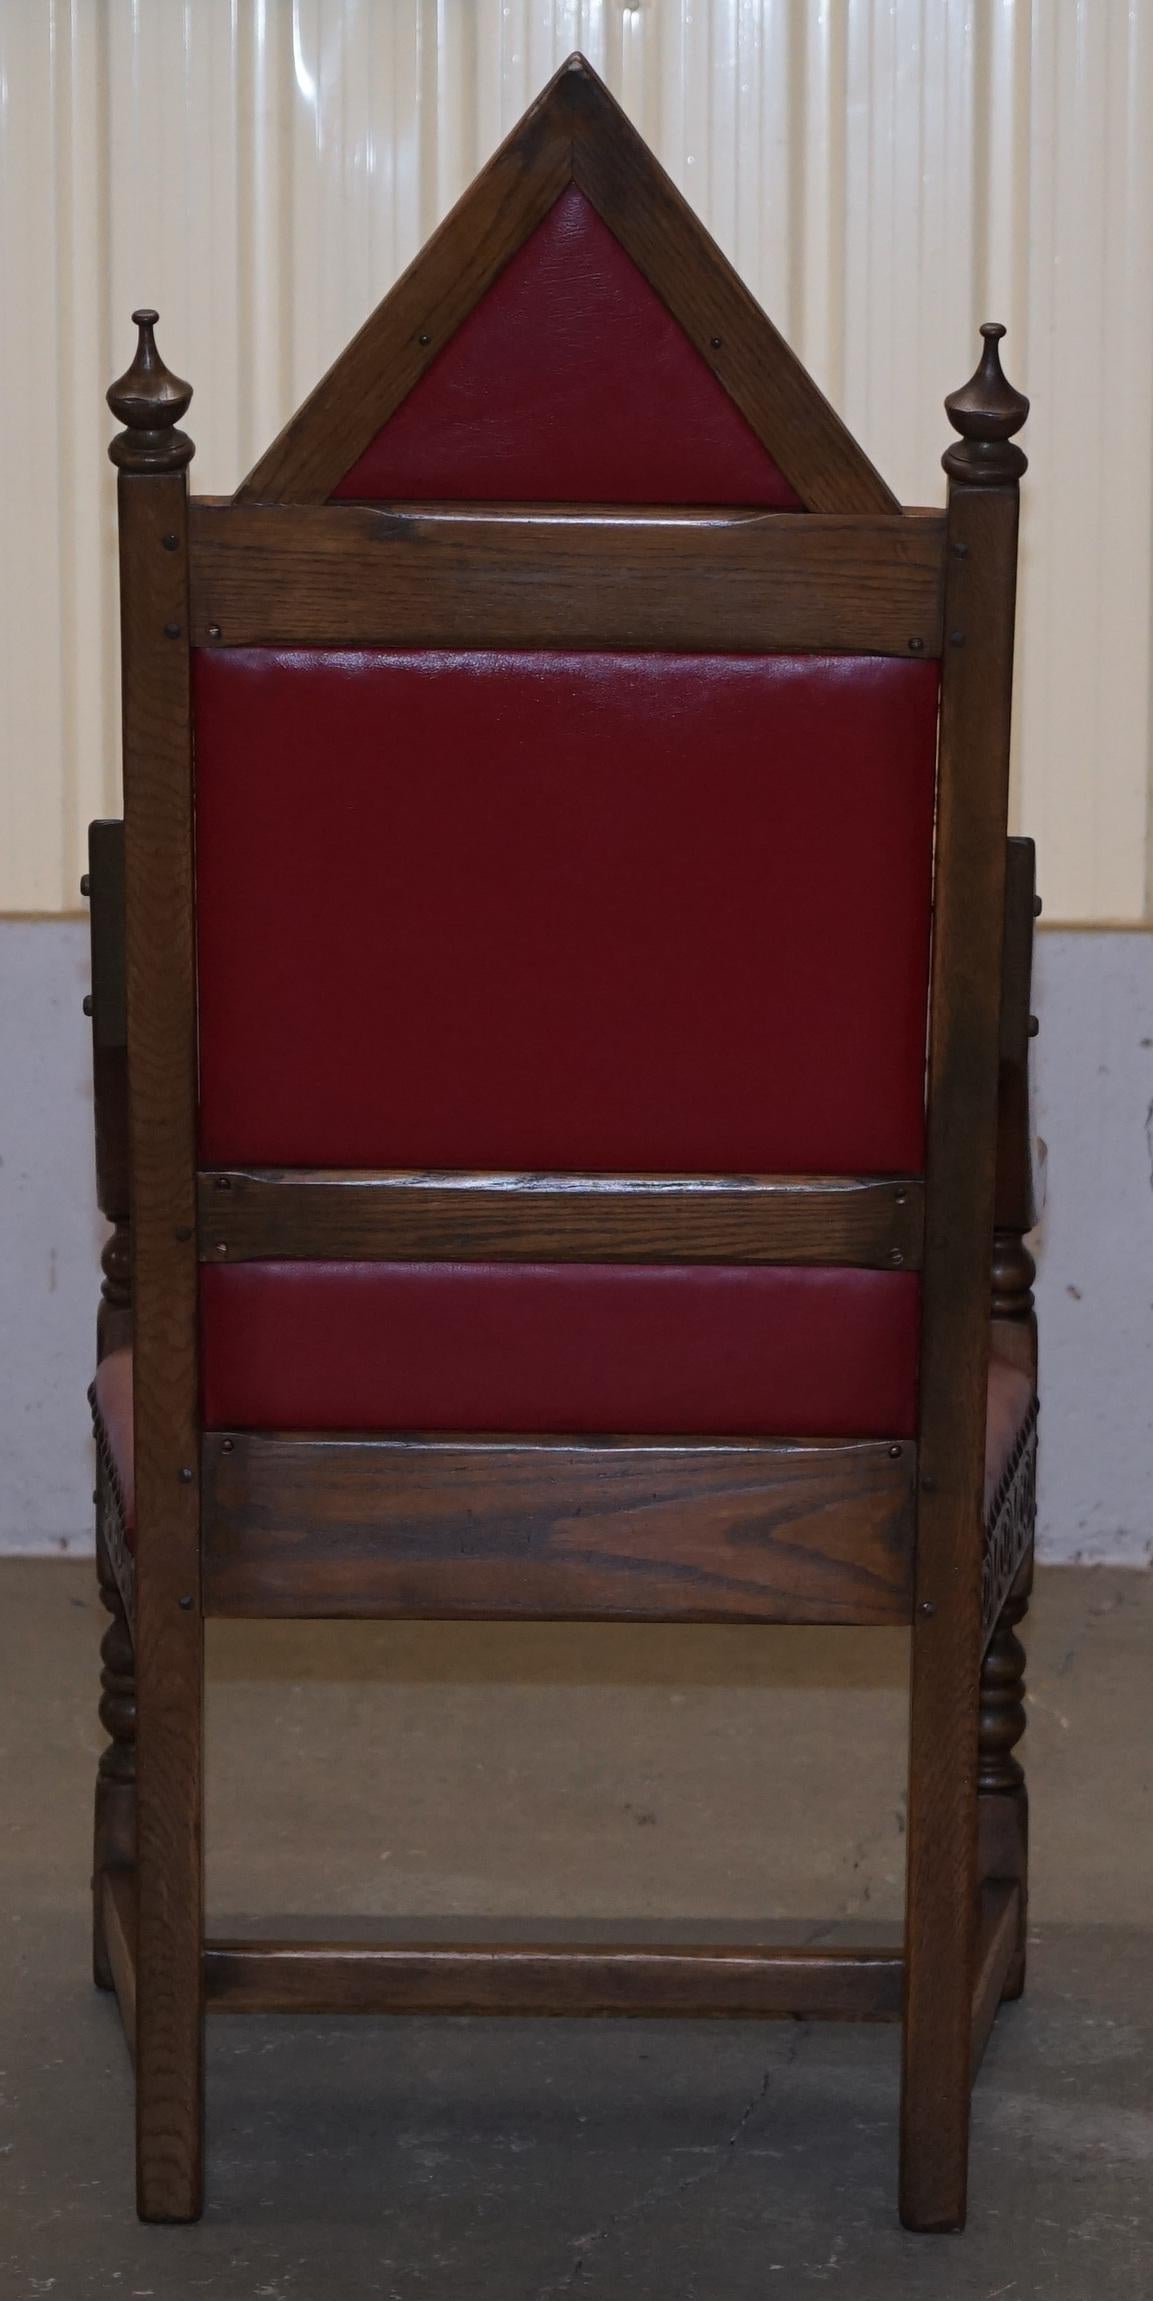 Original Elizabeth II Silver Jubilee Throne Armchair English Oxblood Oak Leather 5